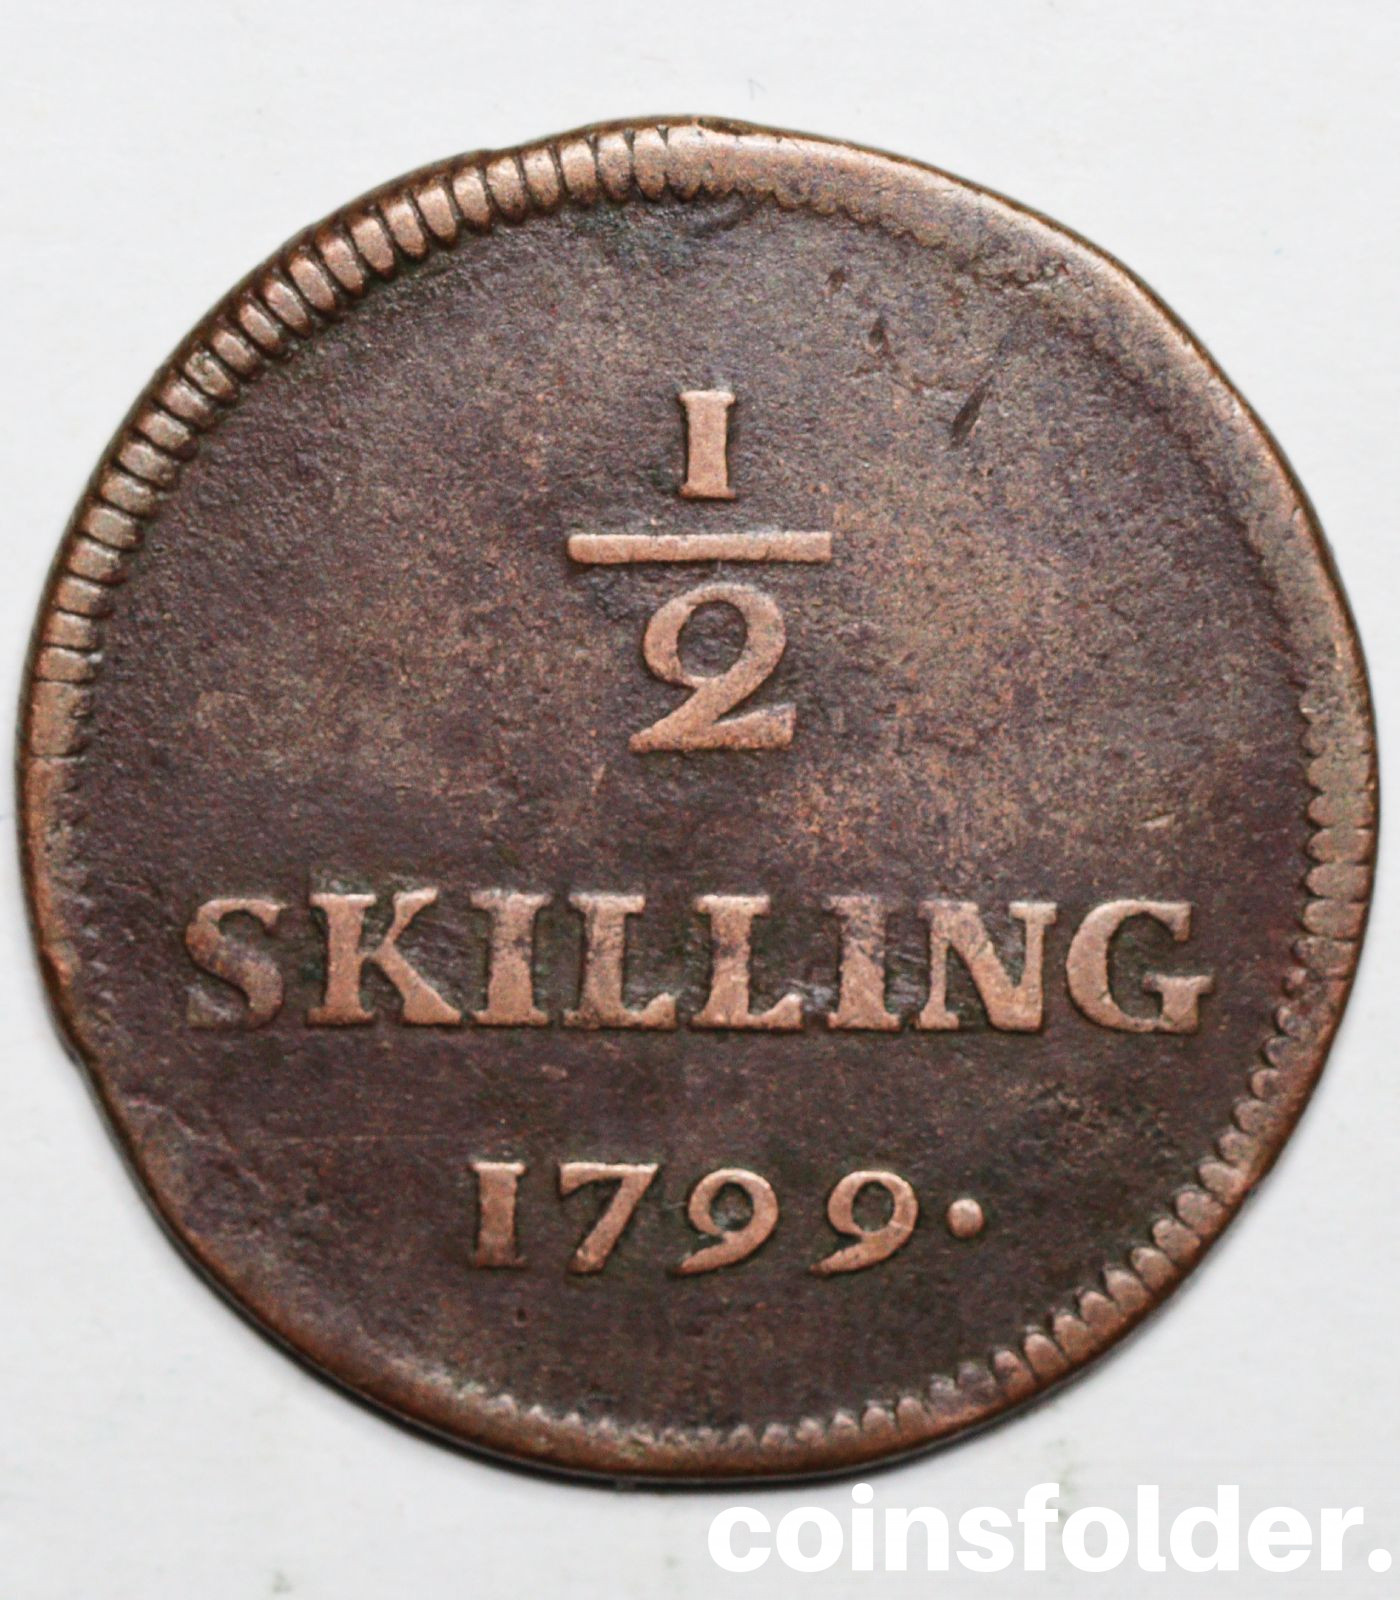 Sweden 1/2 skilling 1799